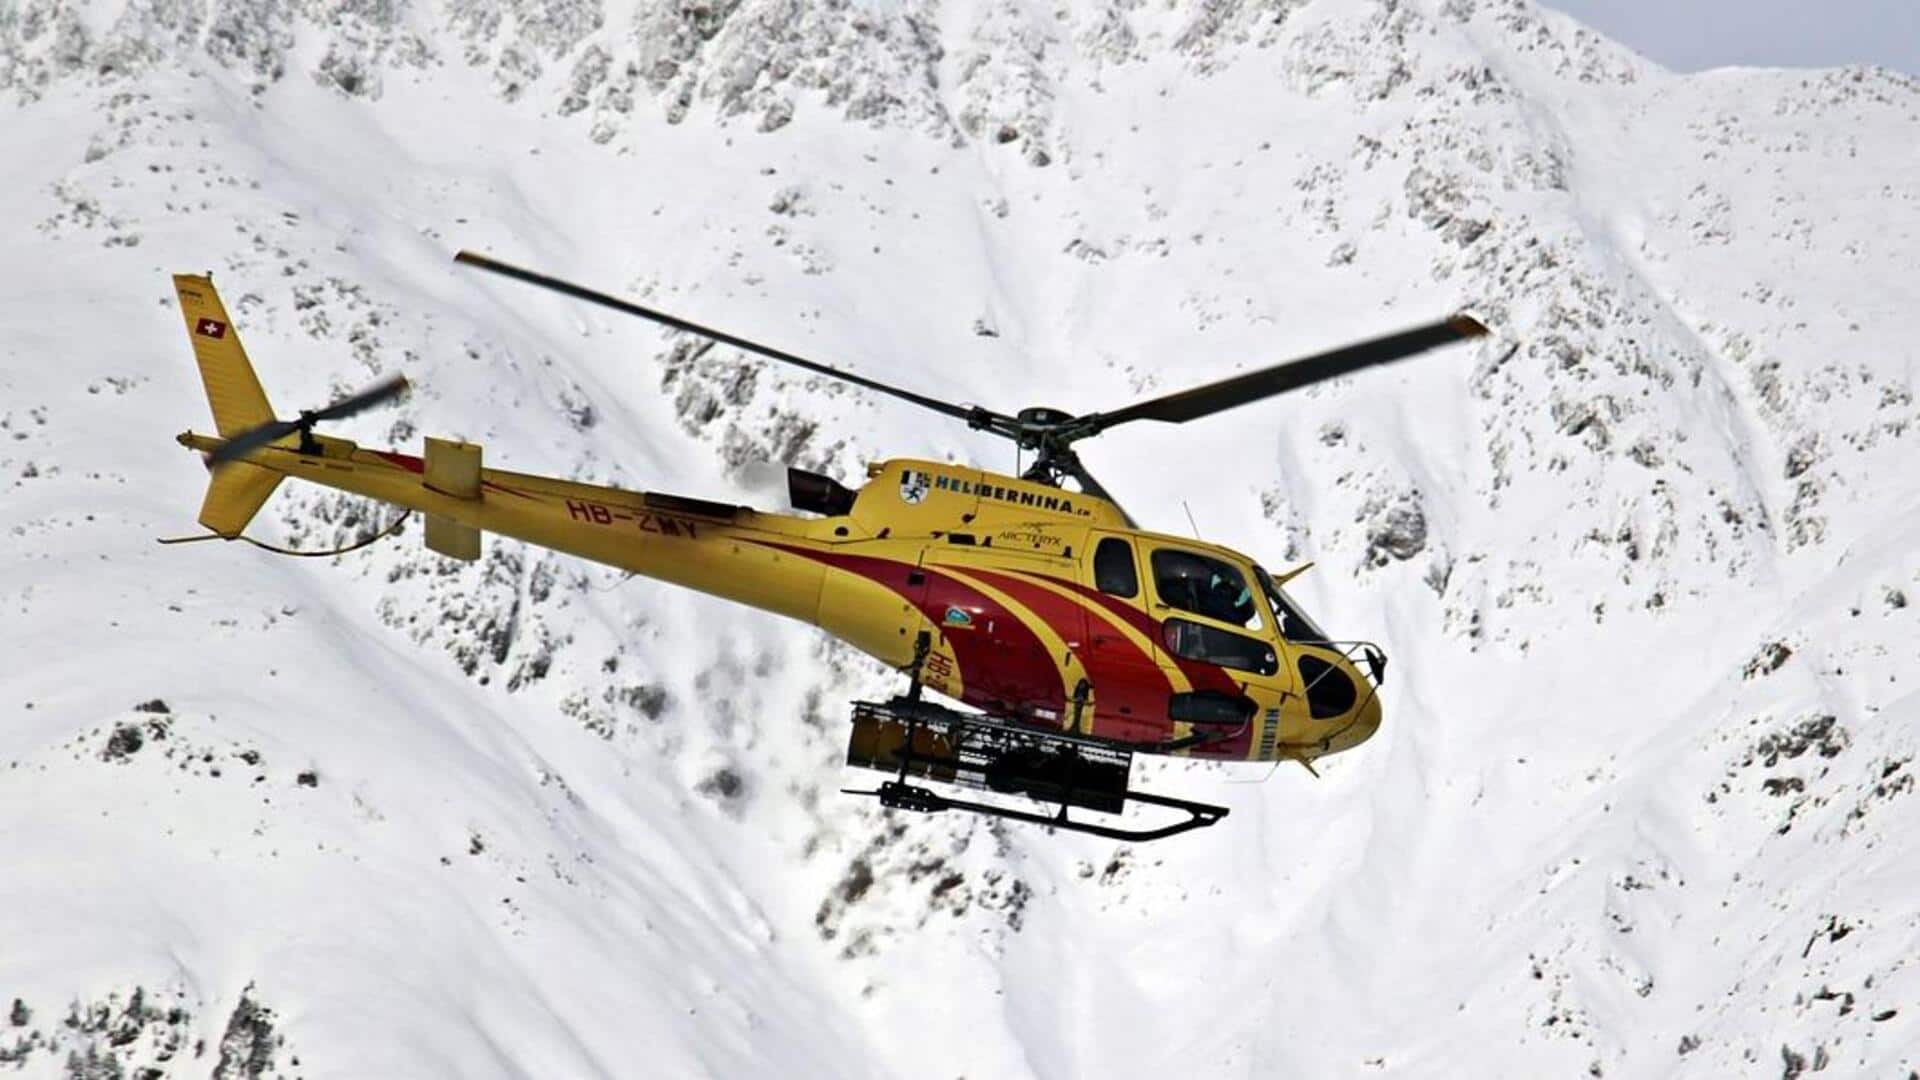 नेपाल: काठमांडू जा रहा हेलीकॉप्टर 6 लोगों के साथ लापता, दुर्घटना की आशंका 